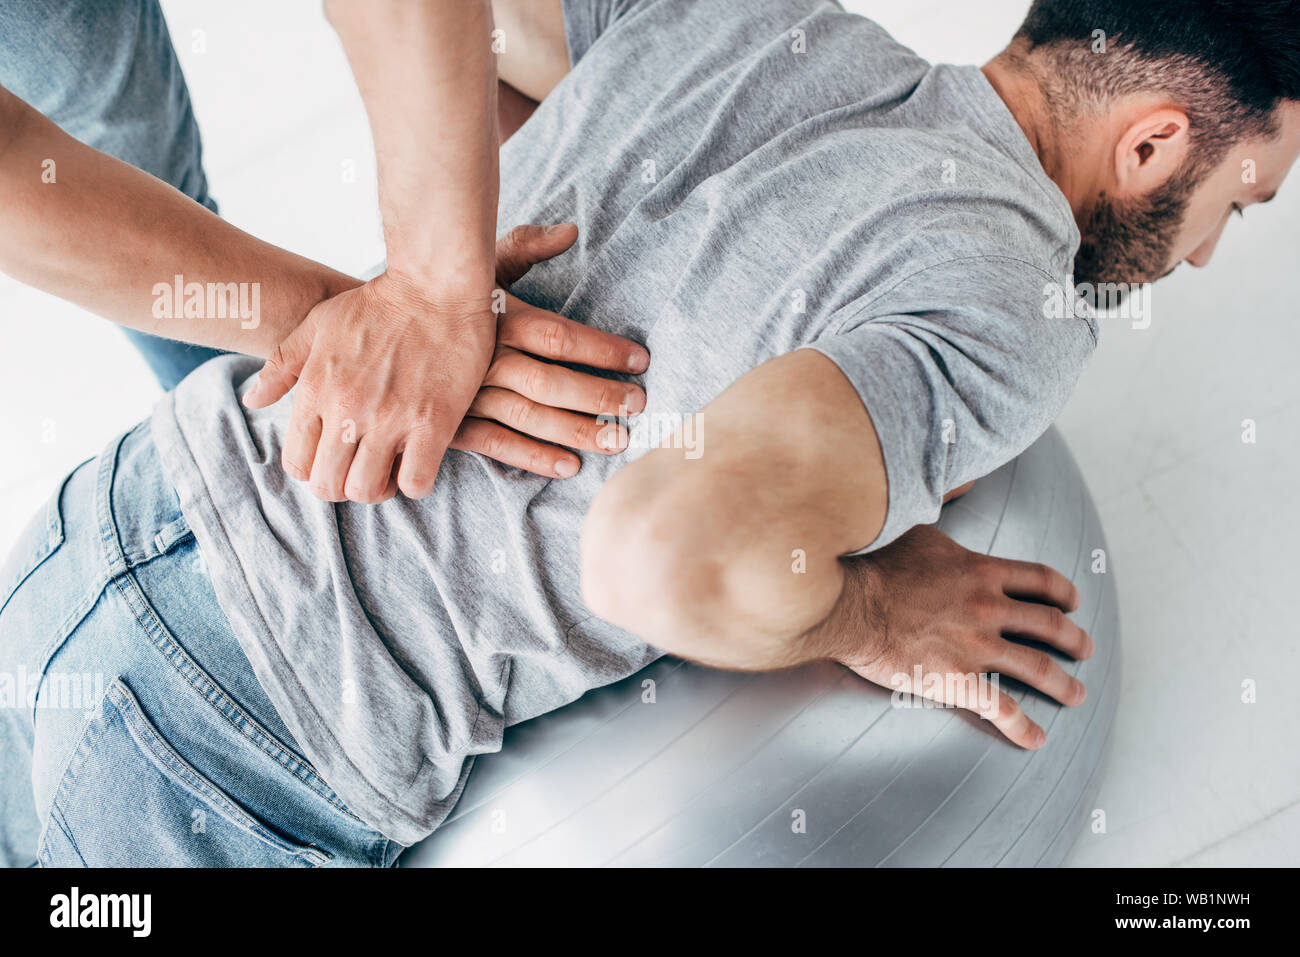 Massaggio chiropratico retro dell uomo disteso sulla sfera di fitness Foto Stock